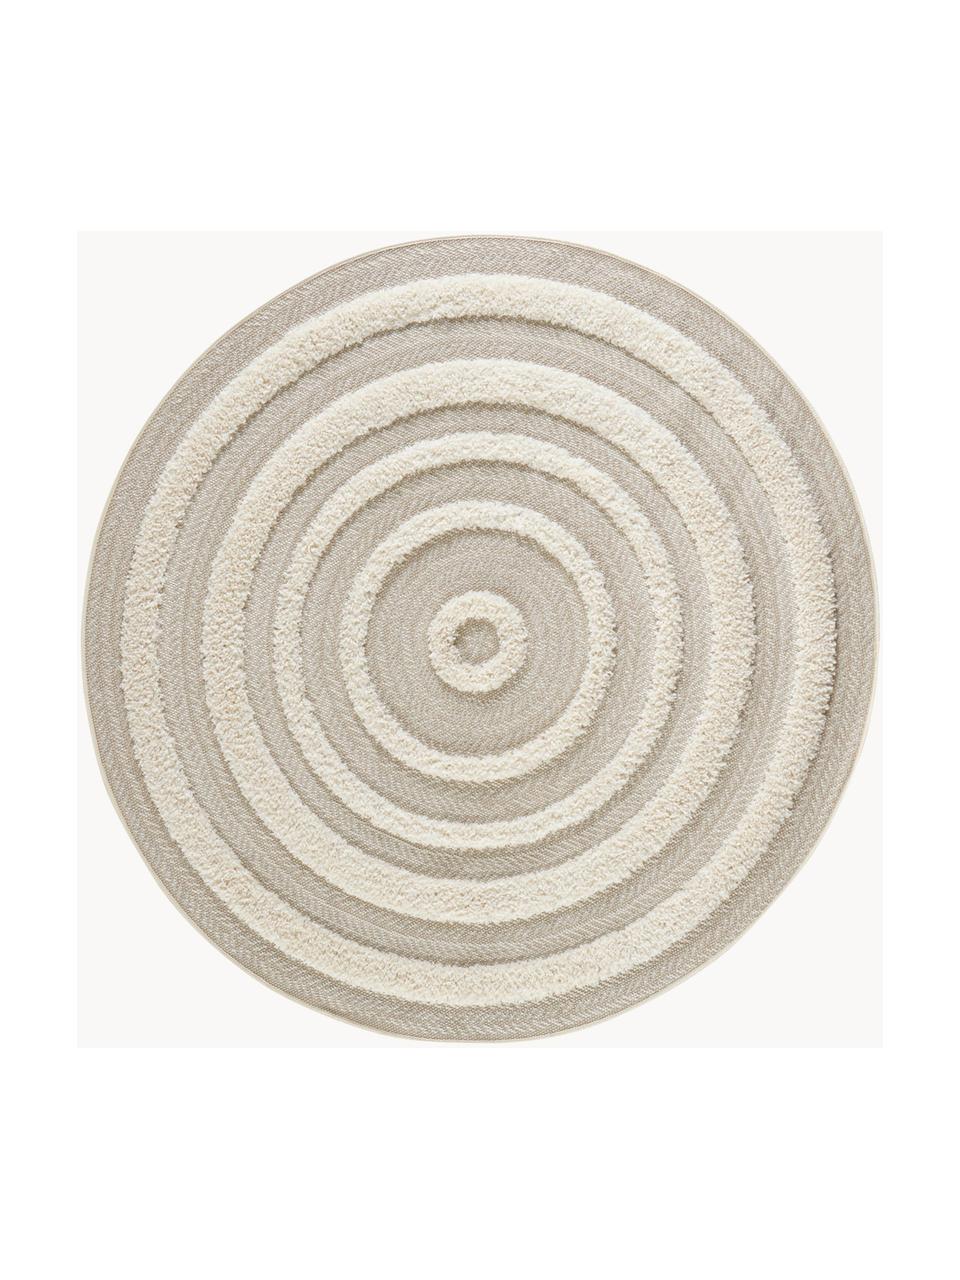 Kulatý vnitřní a venkovní koberec s různou výškou povrchu Nador, 100 % polypropylen, Světle béžová, krémově bílá, Ø 160 cm (velikost L)